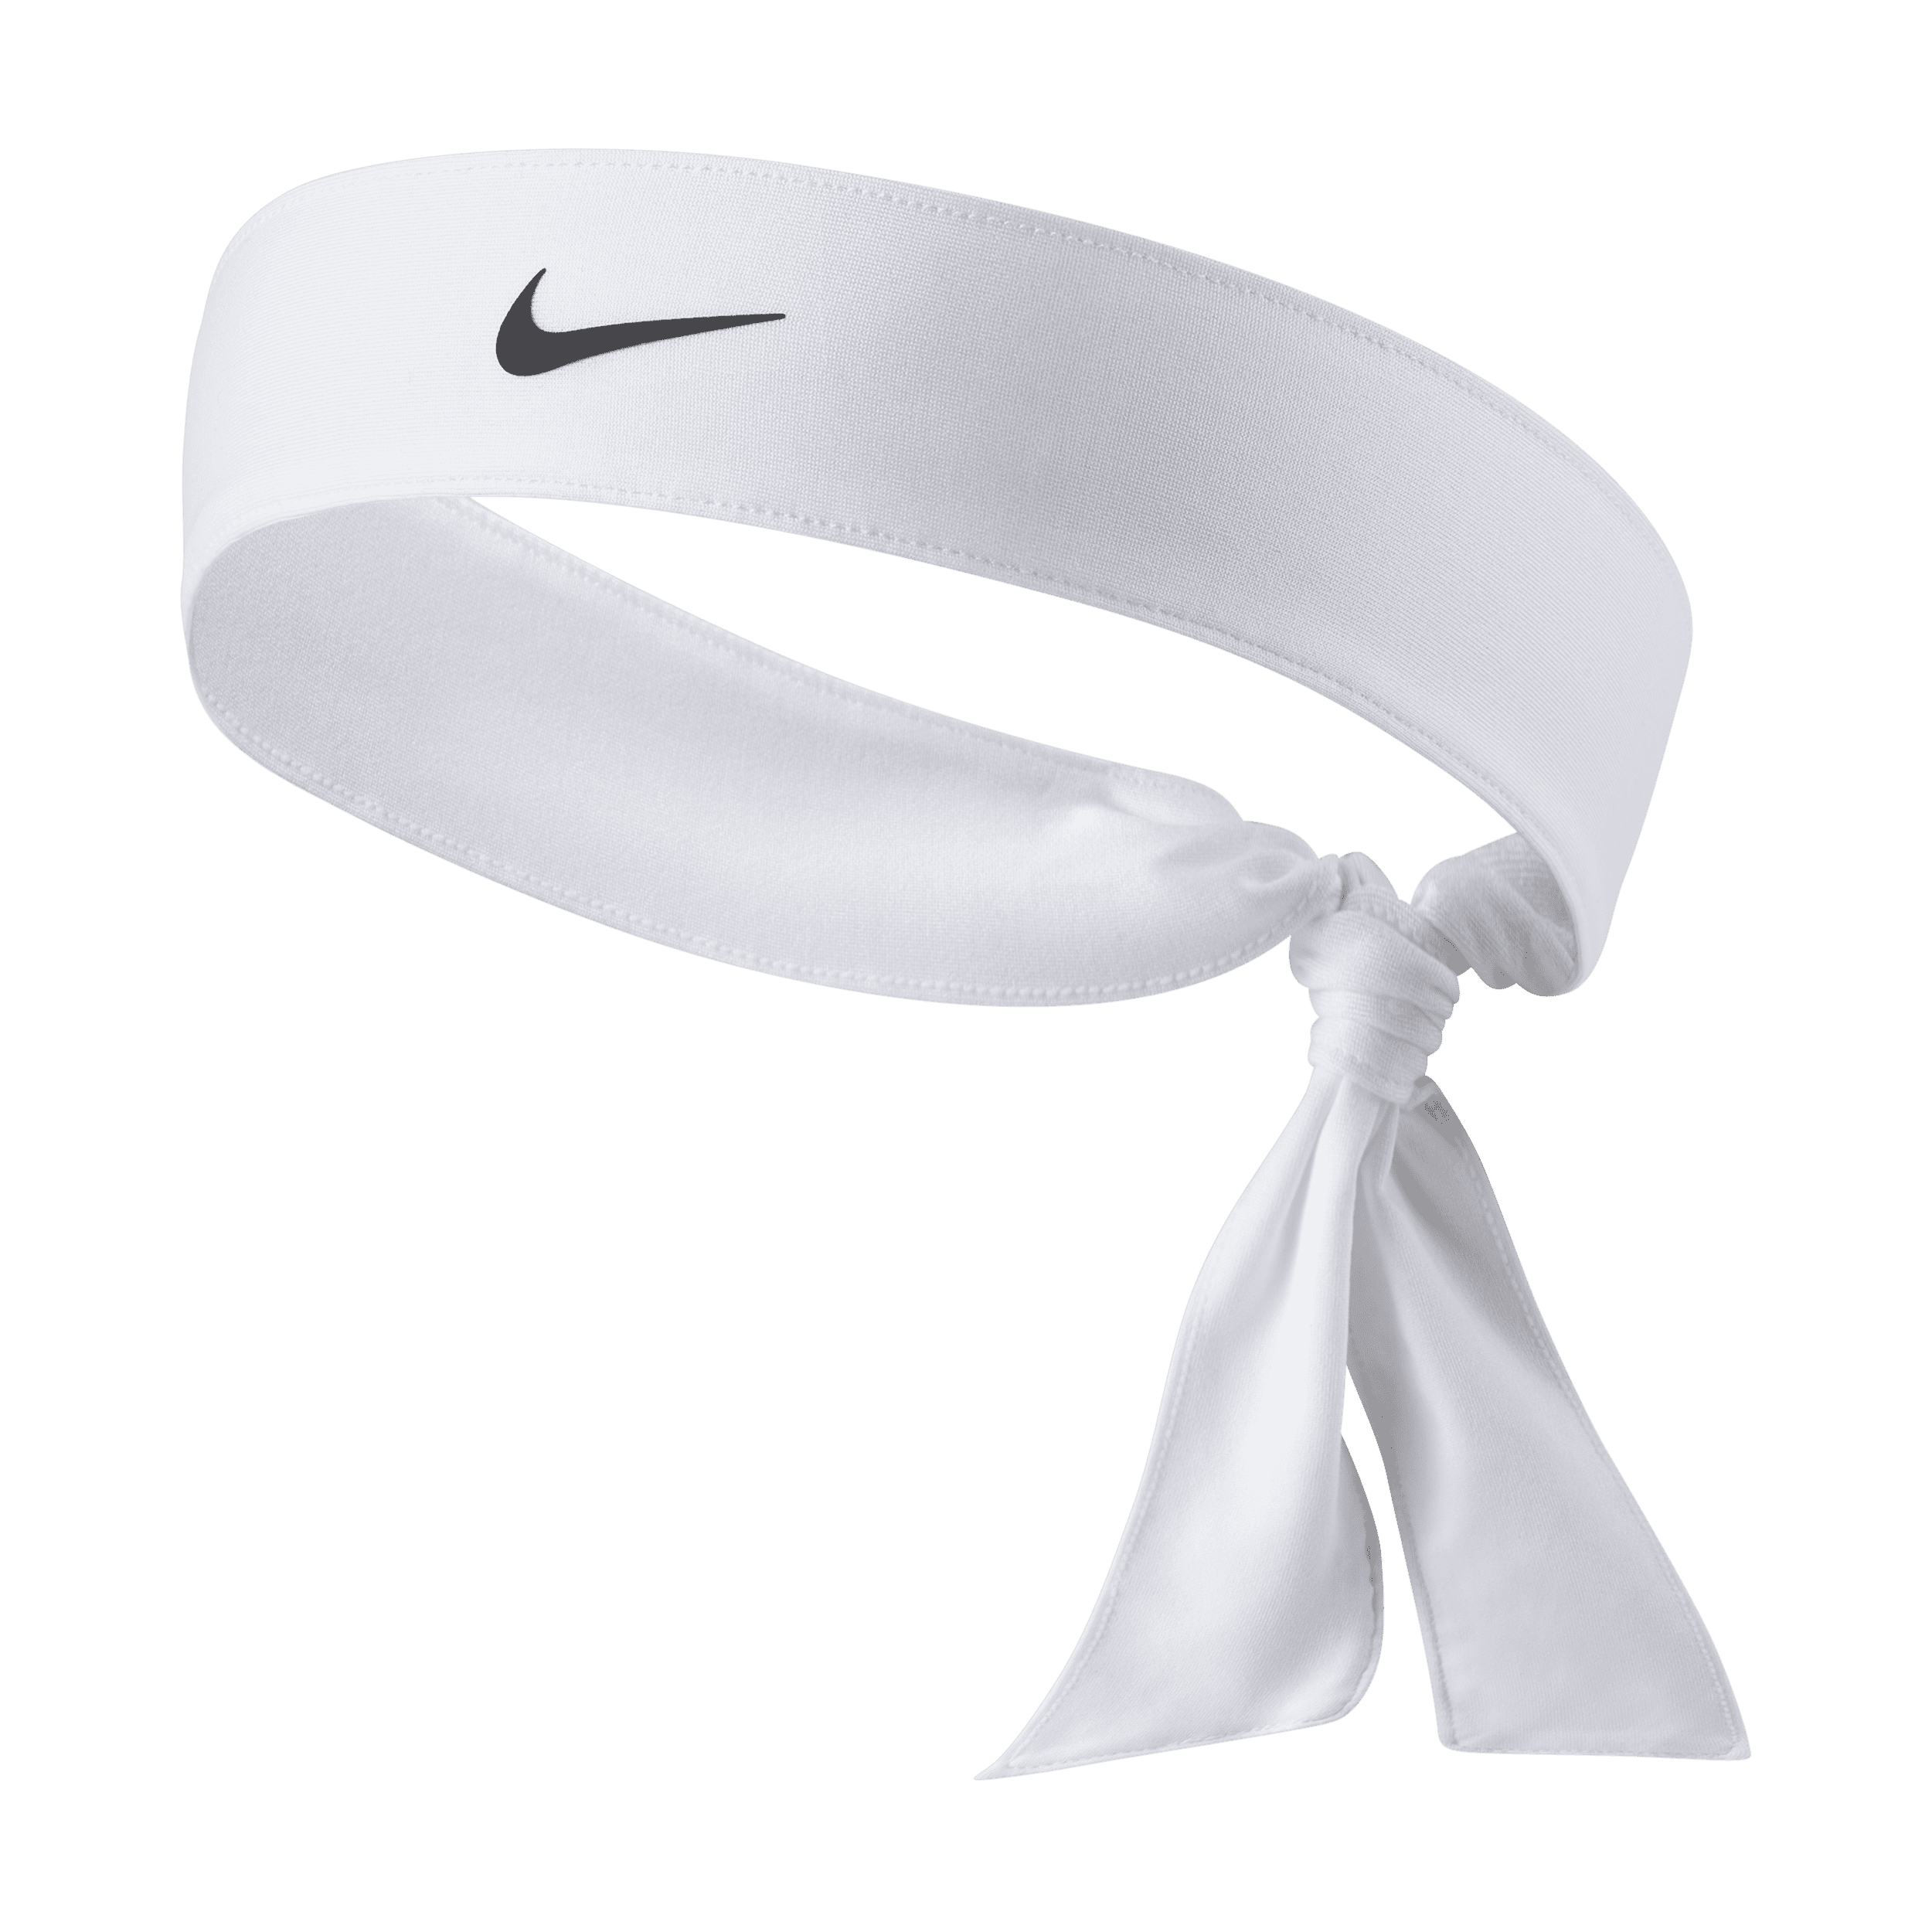 NikeCourt Tennishoofdband voor dames - Wit